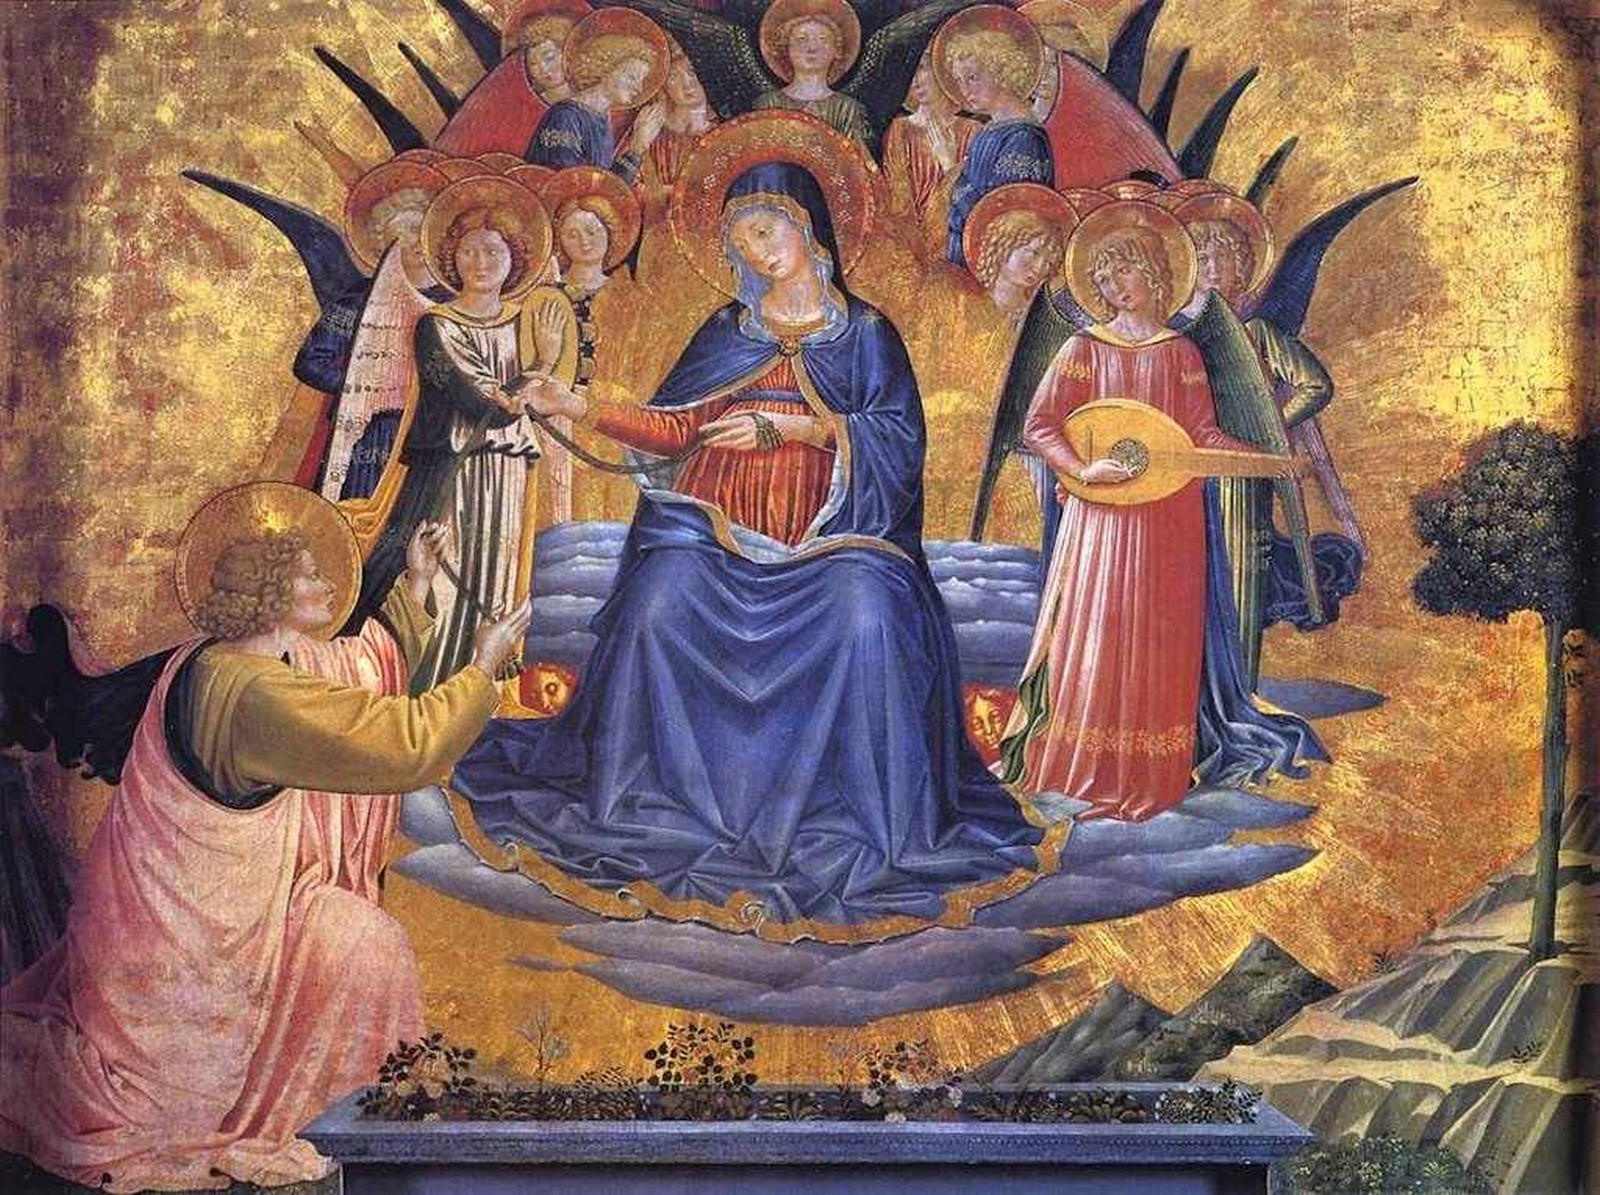 La Impresionante Historia del Santo Cinturón que usó la Virgen María